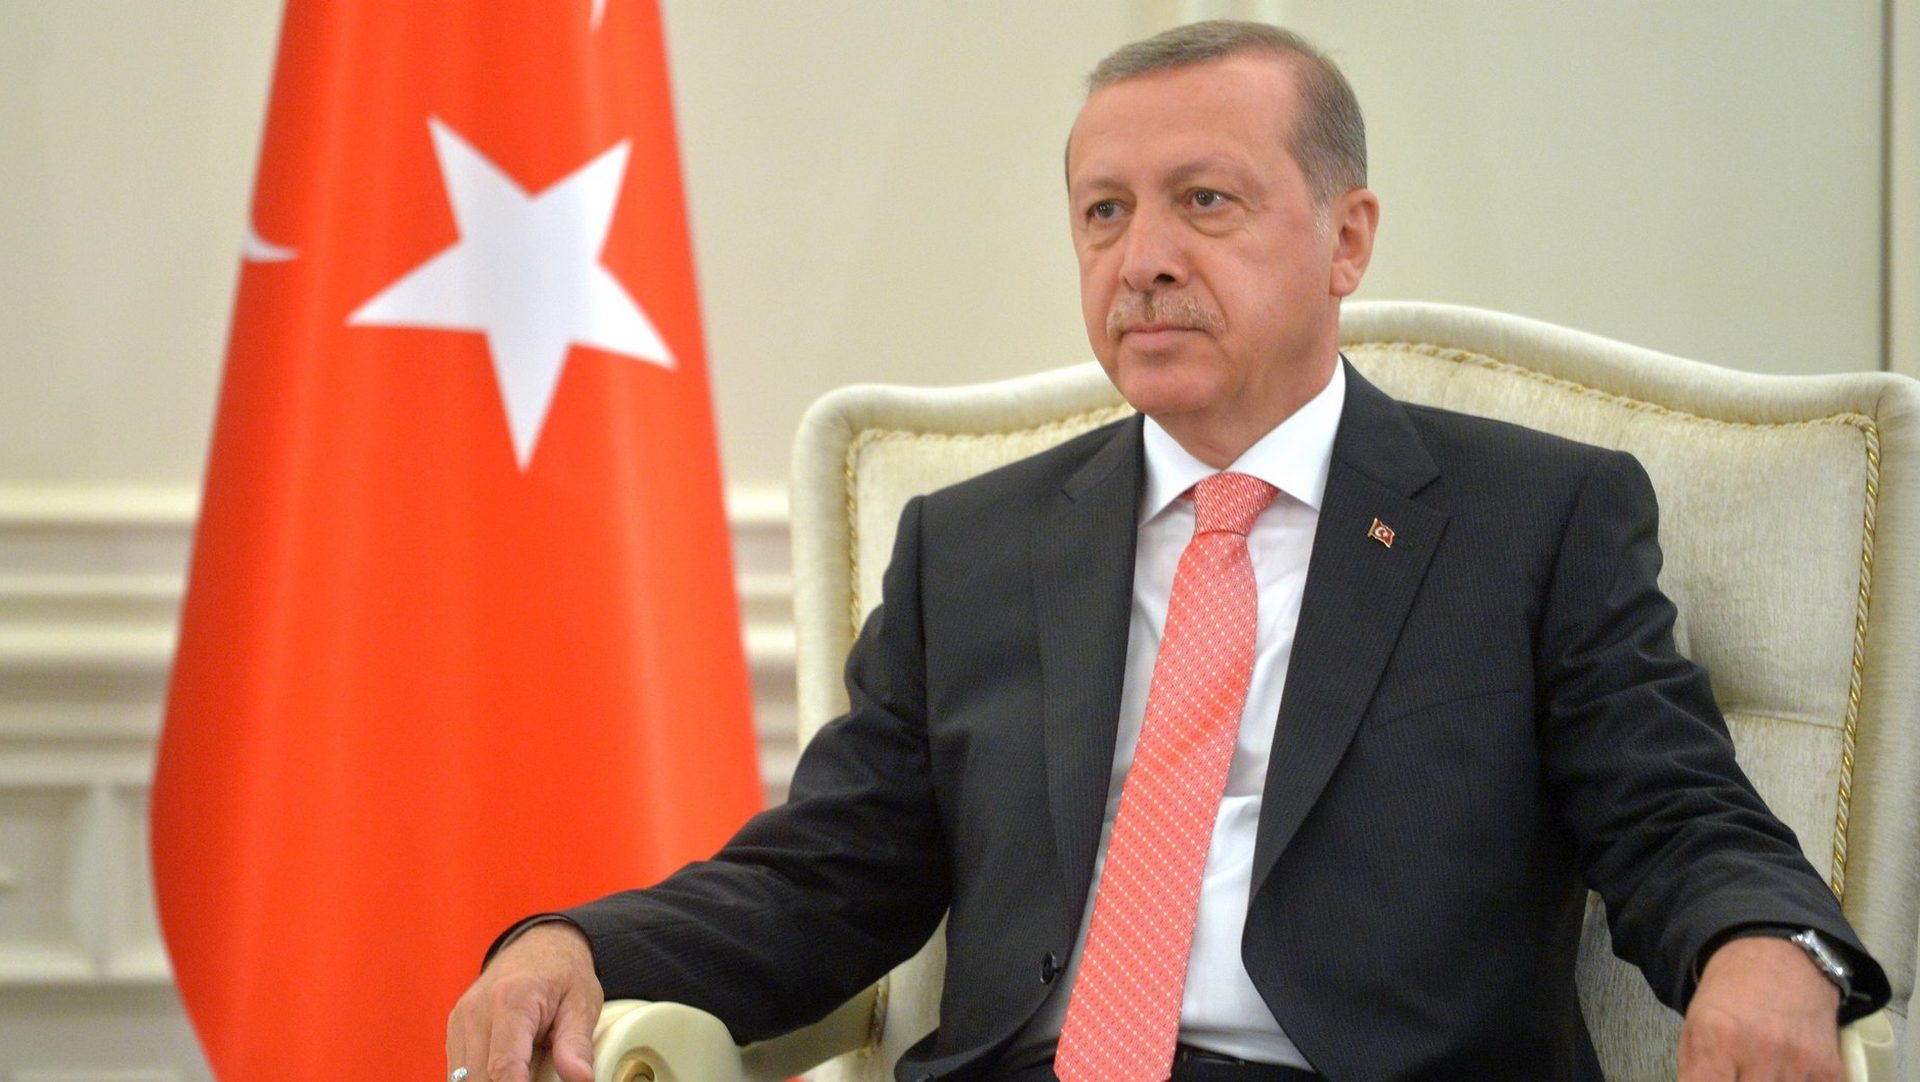 Le président de la République de Turquie Recep Tayyip Erdogan | kremlin.ru CC BY 4.0